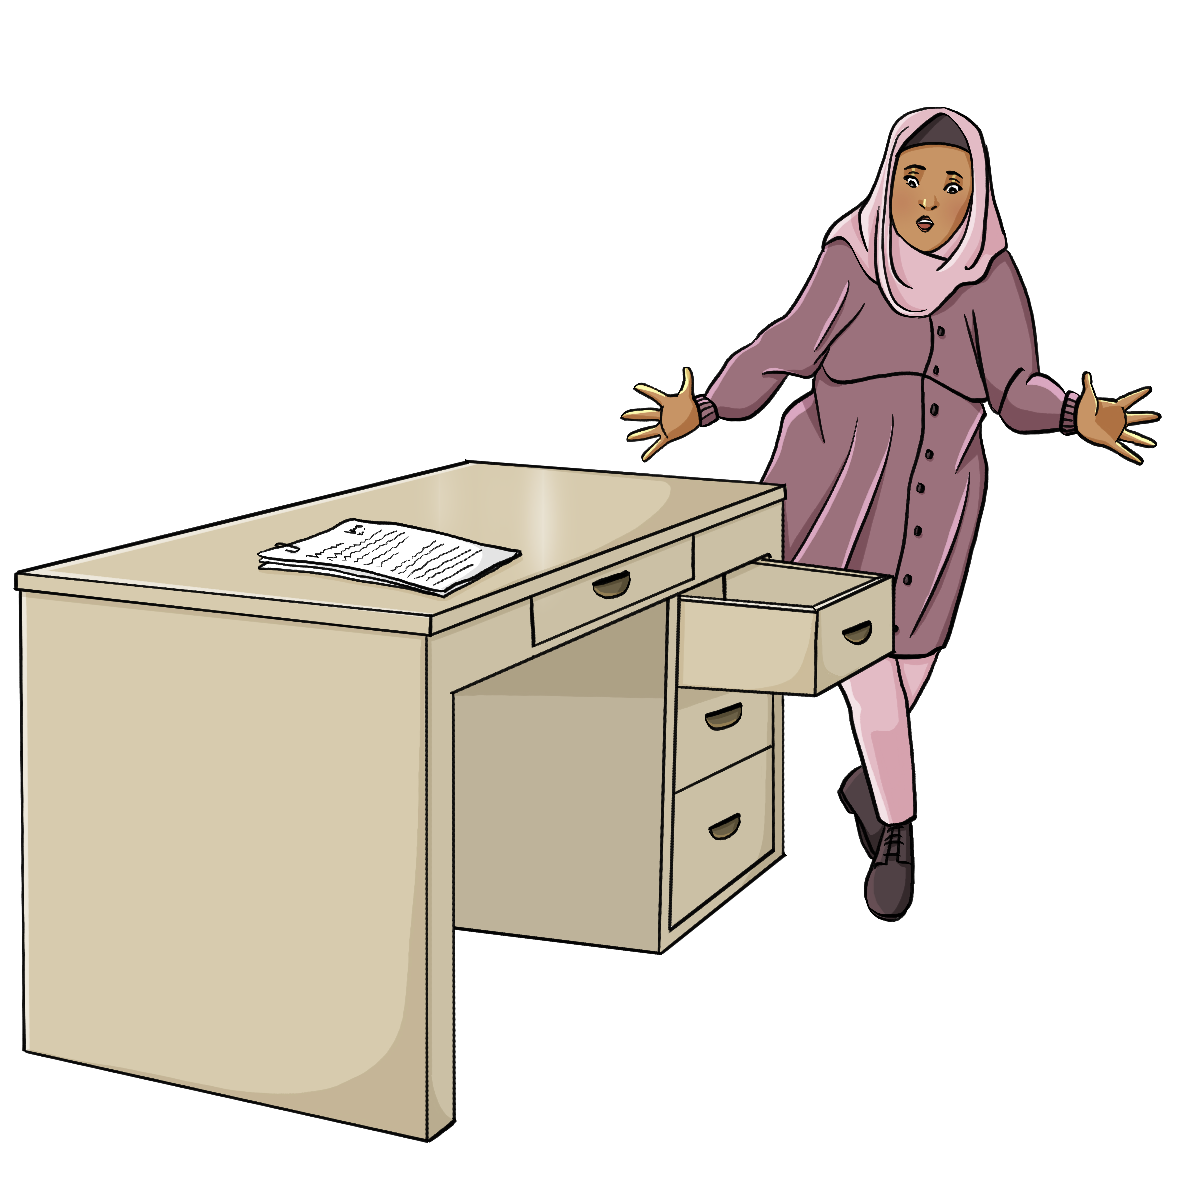 Ein Schreibtisch mit mehreren Schubladen. Eine Frau stößt sich an einer offenen Schublade.